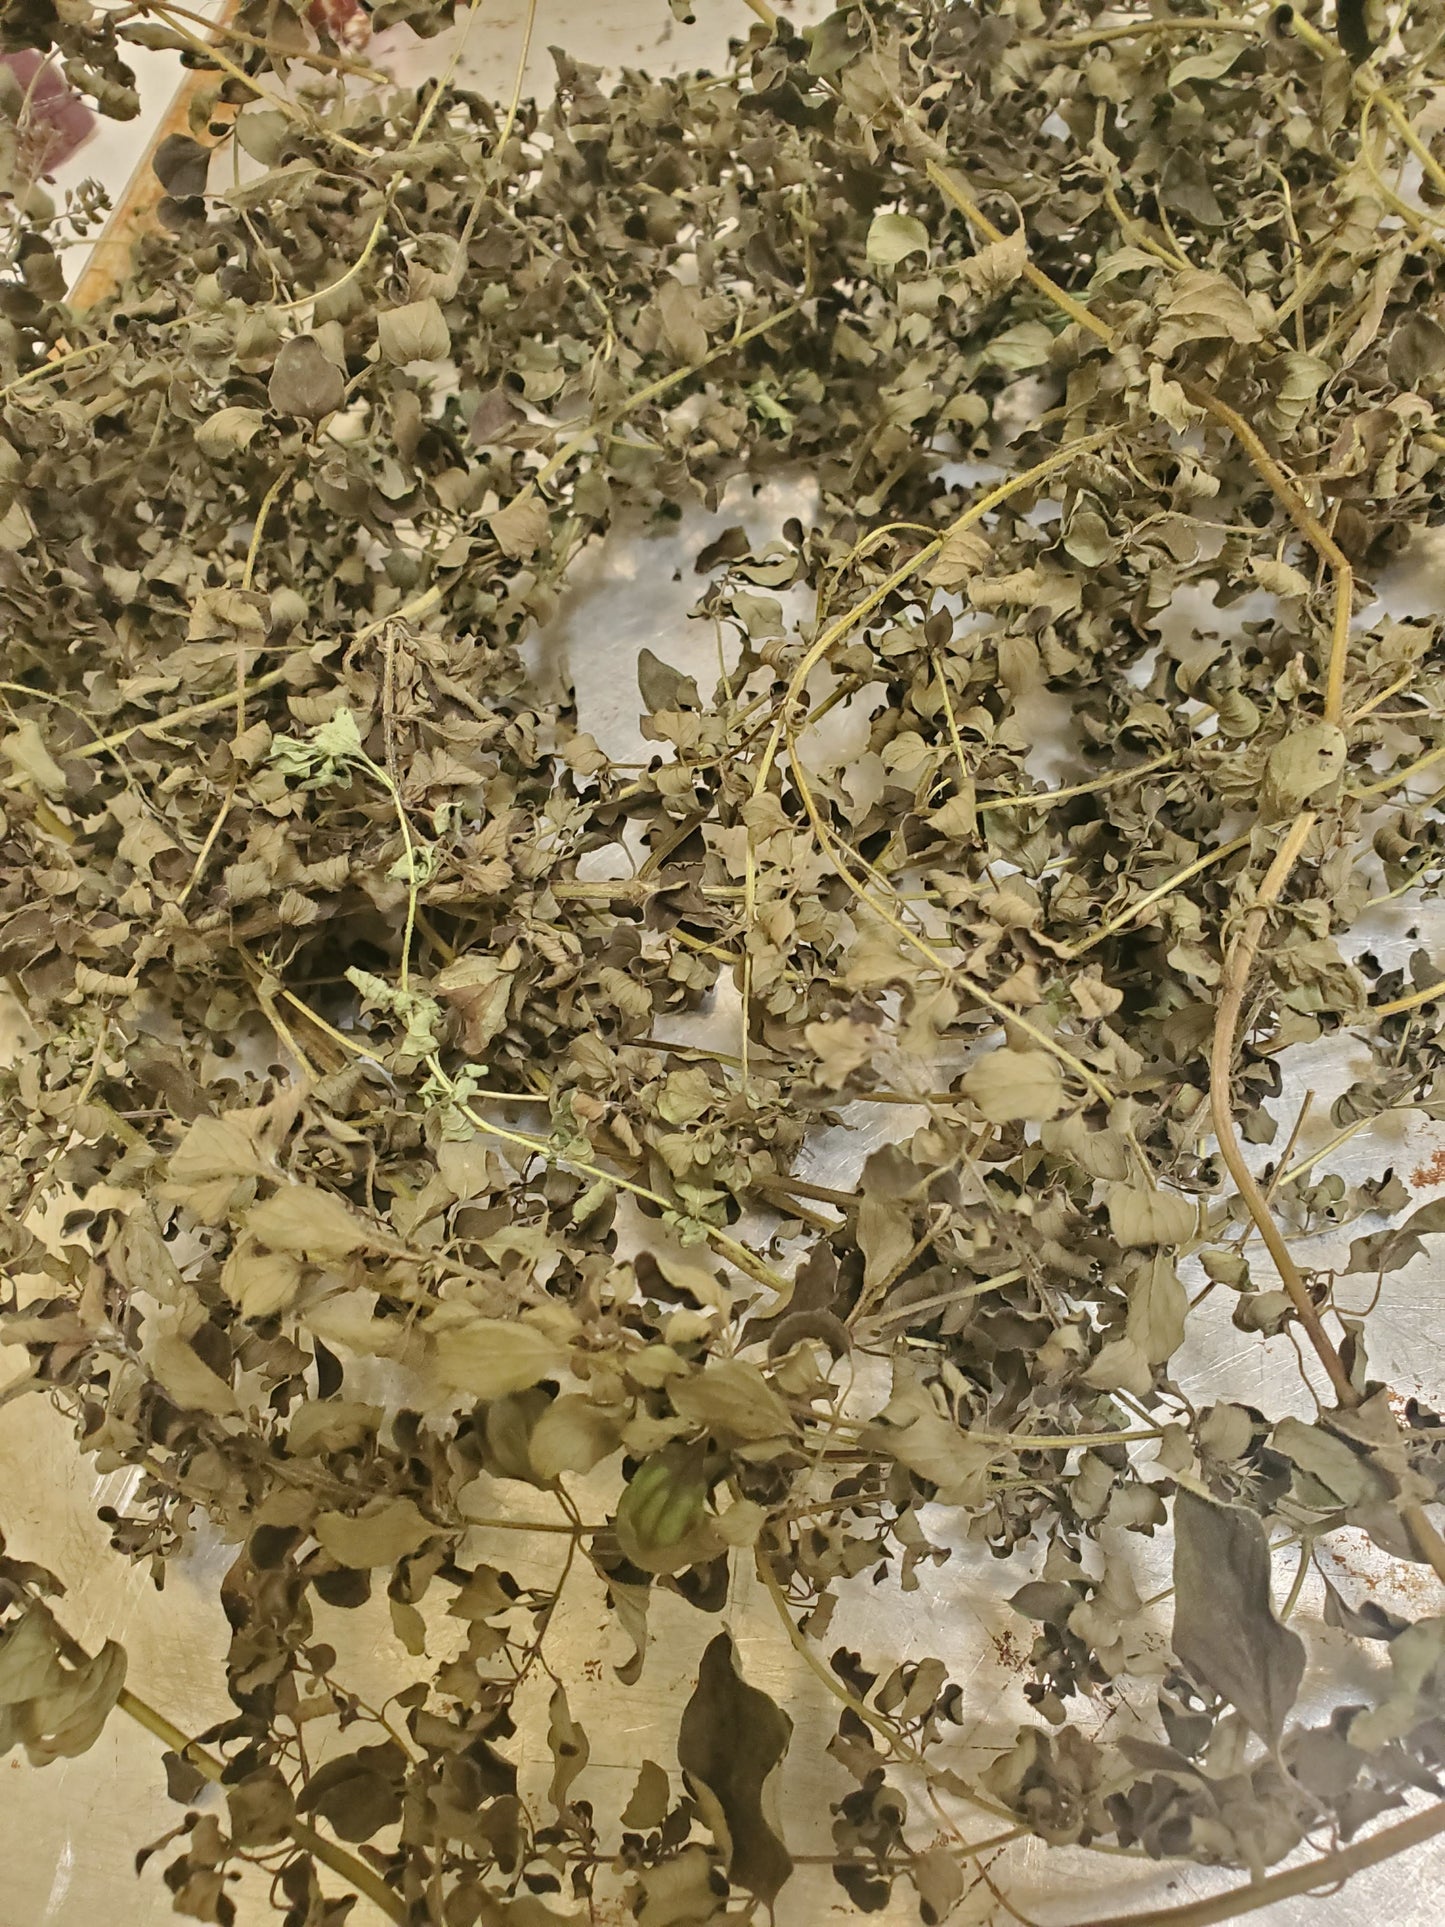 Oregano leaf extract, Origanum vulgare